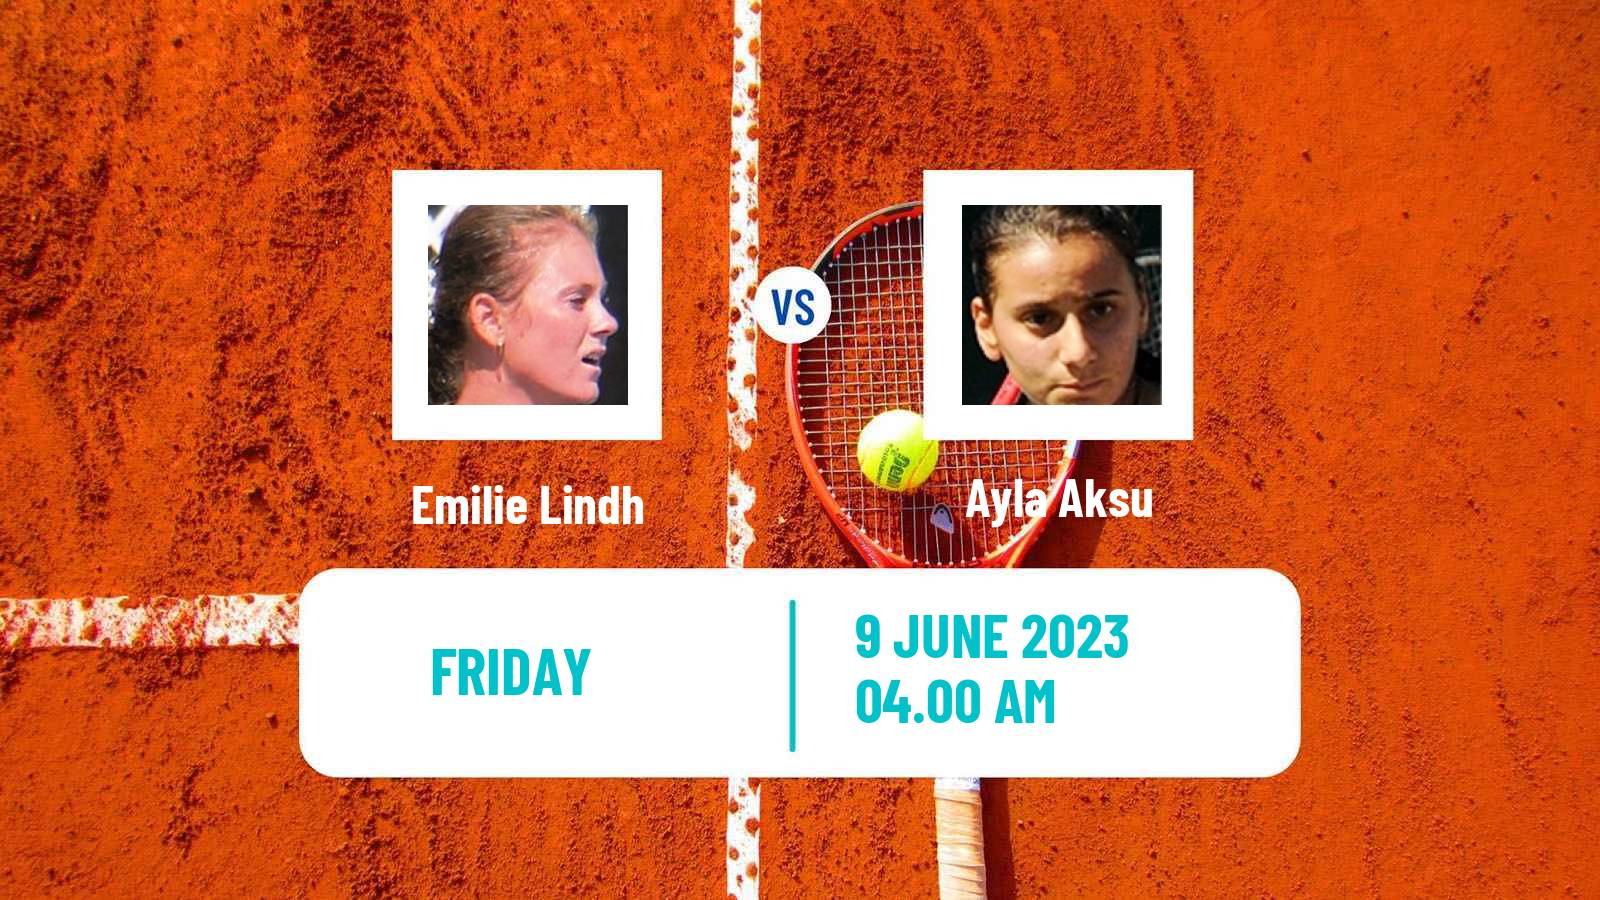 Tennis ITF W25 Madrid Women Emilie Lindh - Ayla Aksu